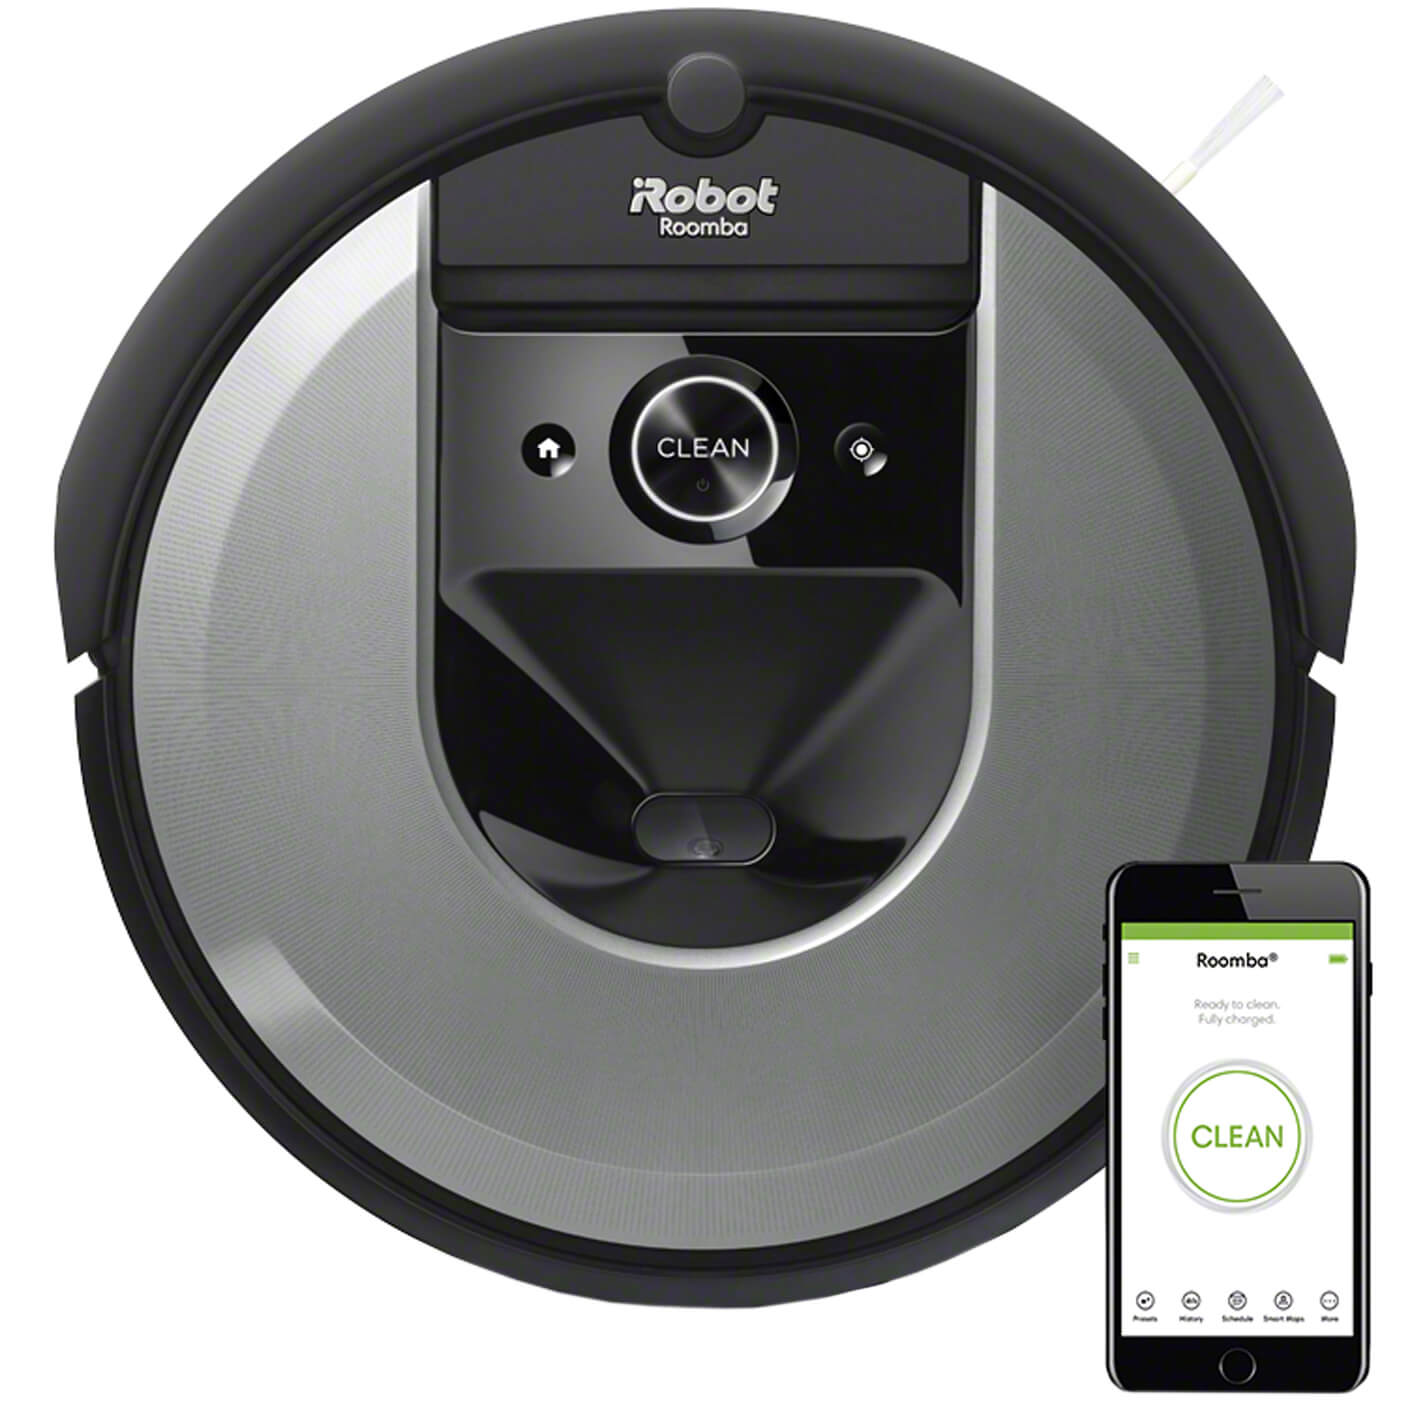 Робот-пилосос iRobot Roomba i7